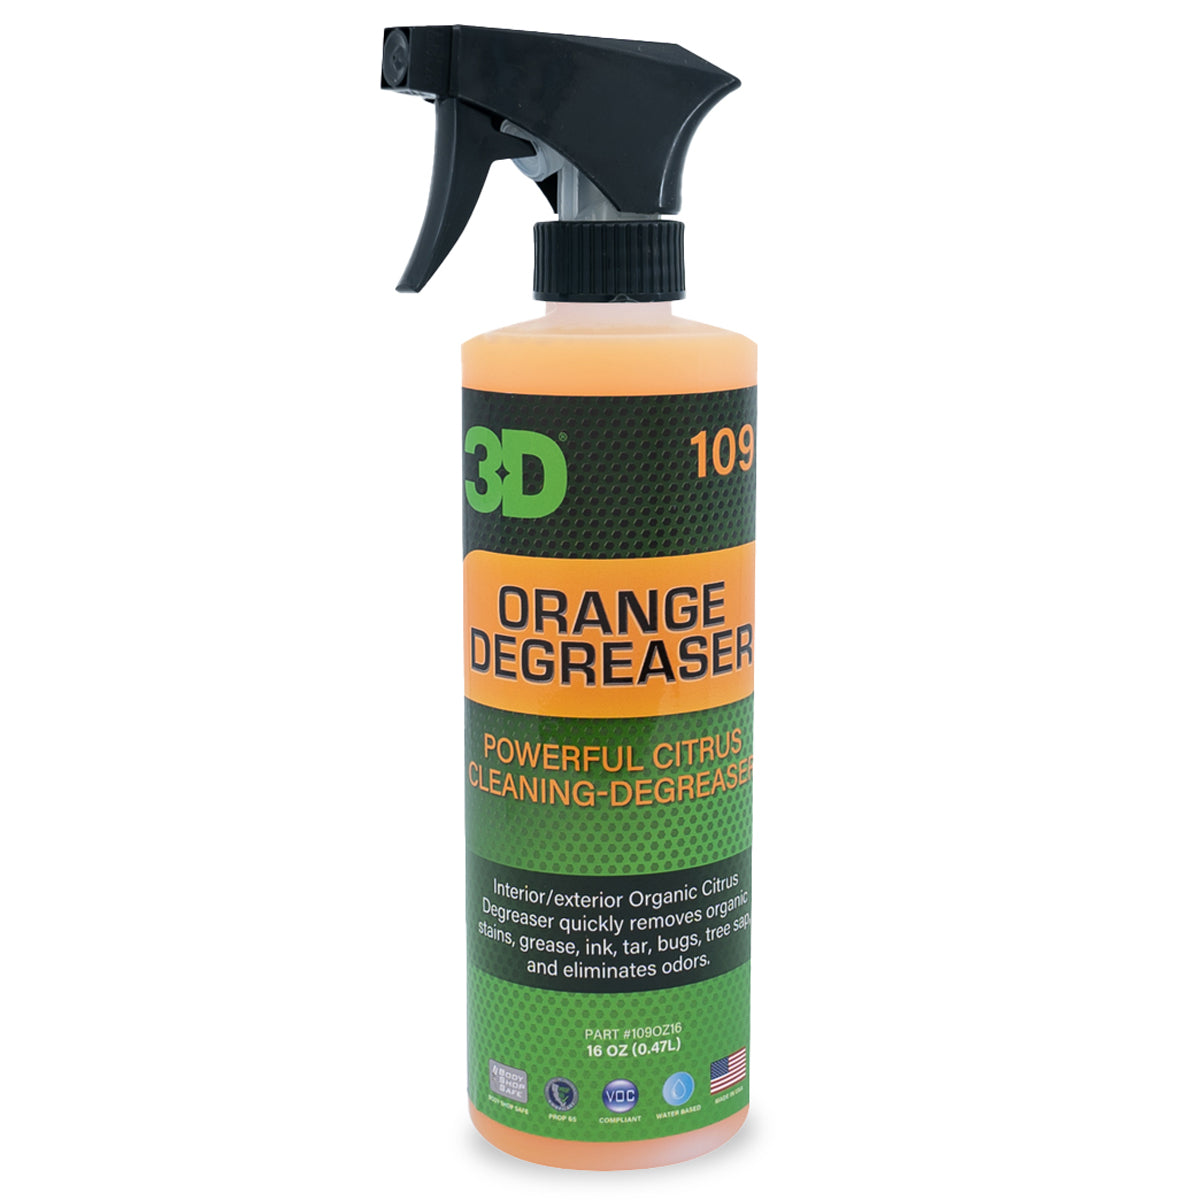 3D Orange Degreaser 109 Kit